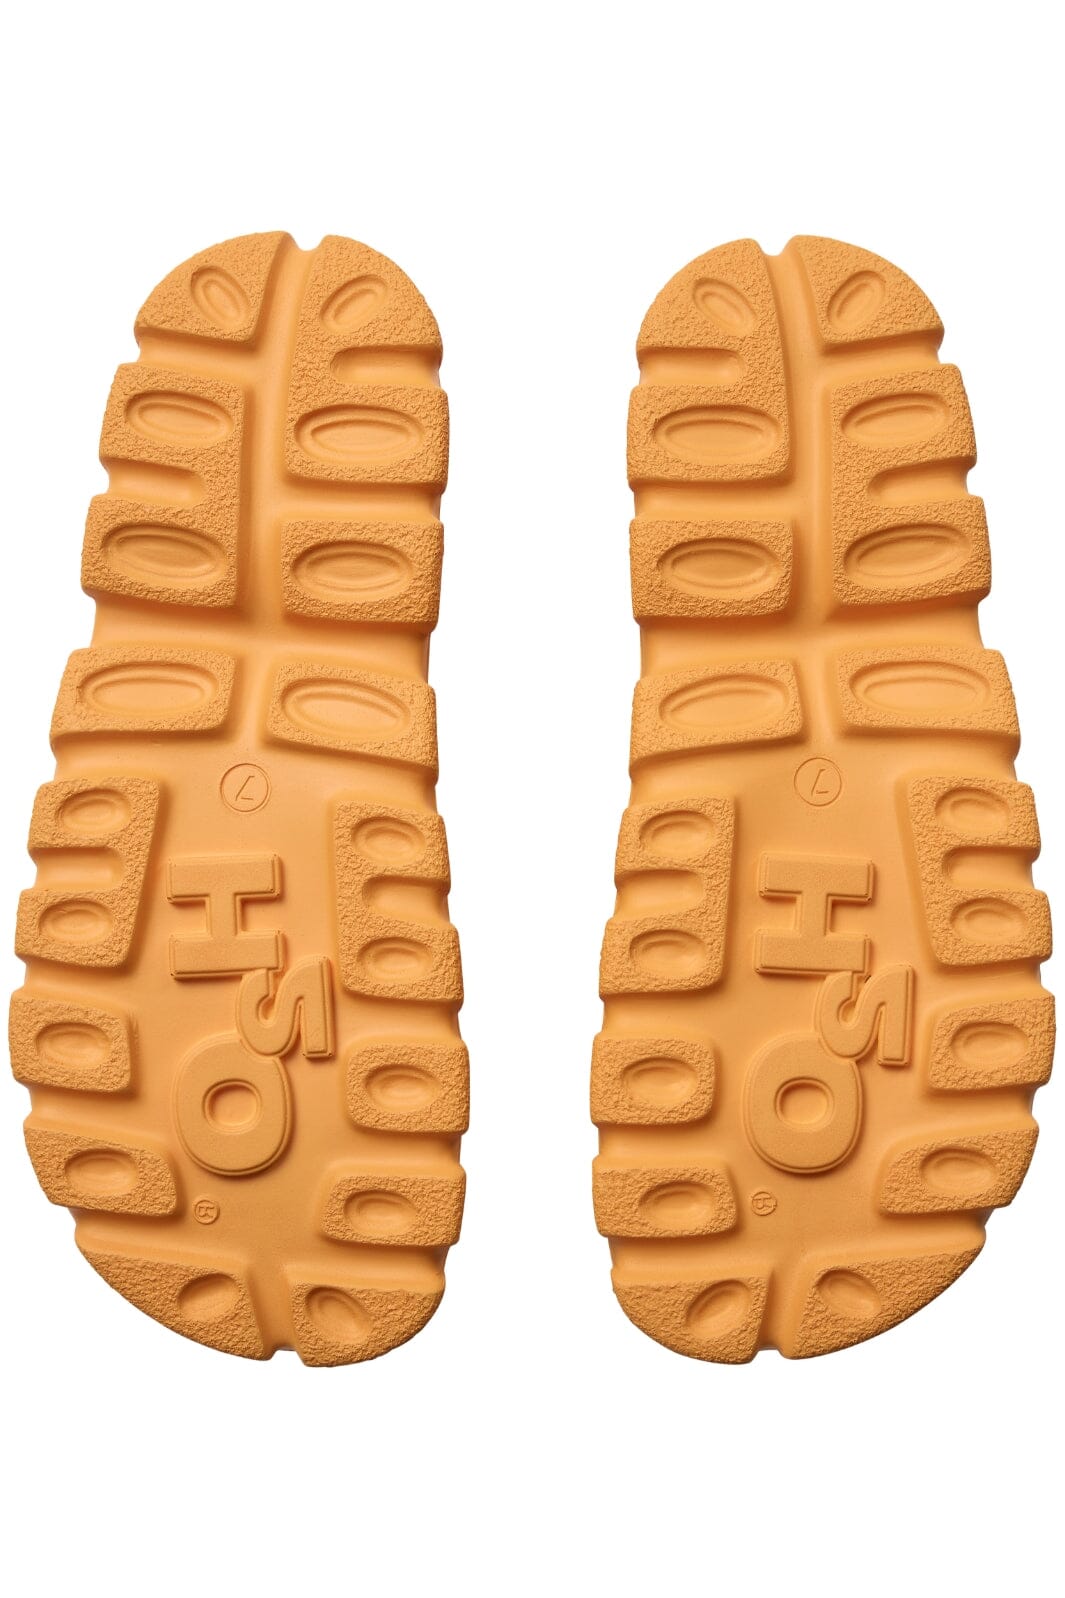 H2O - Trek Sandal - 2049 Apricot Sandaler 